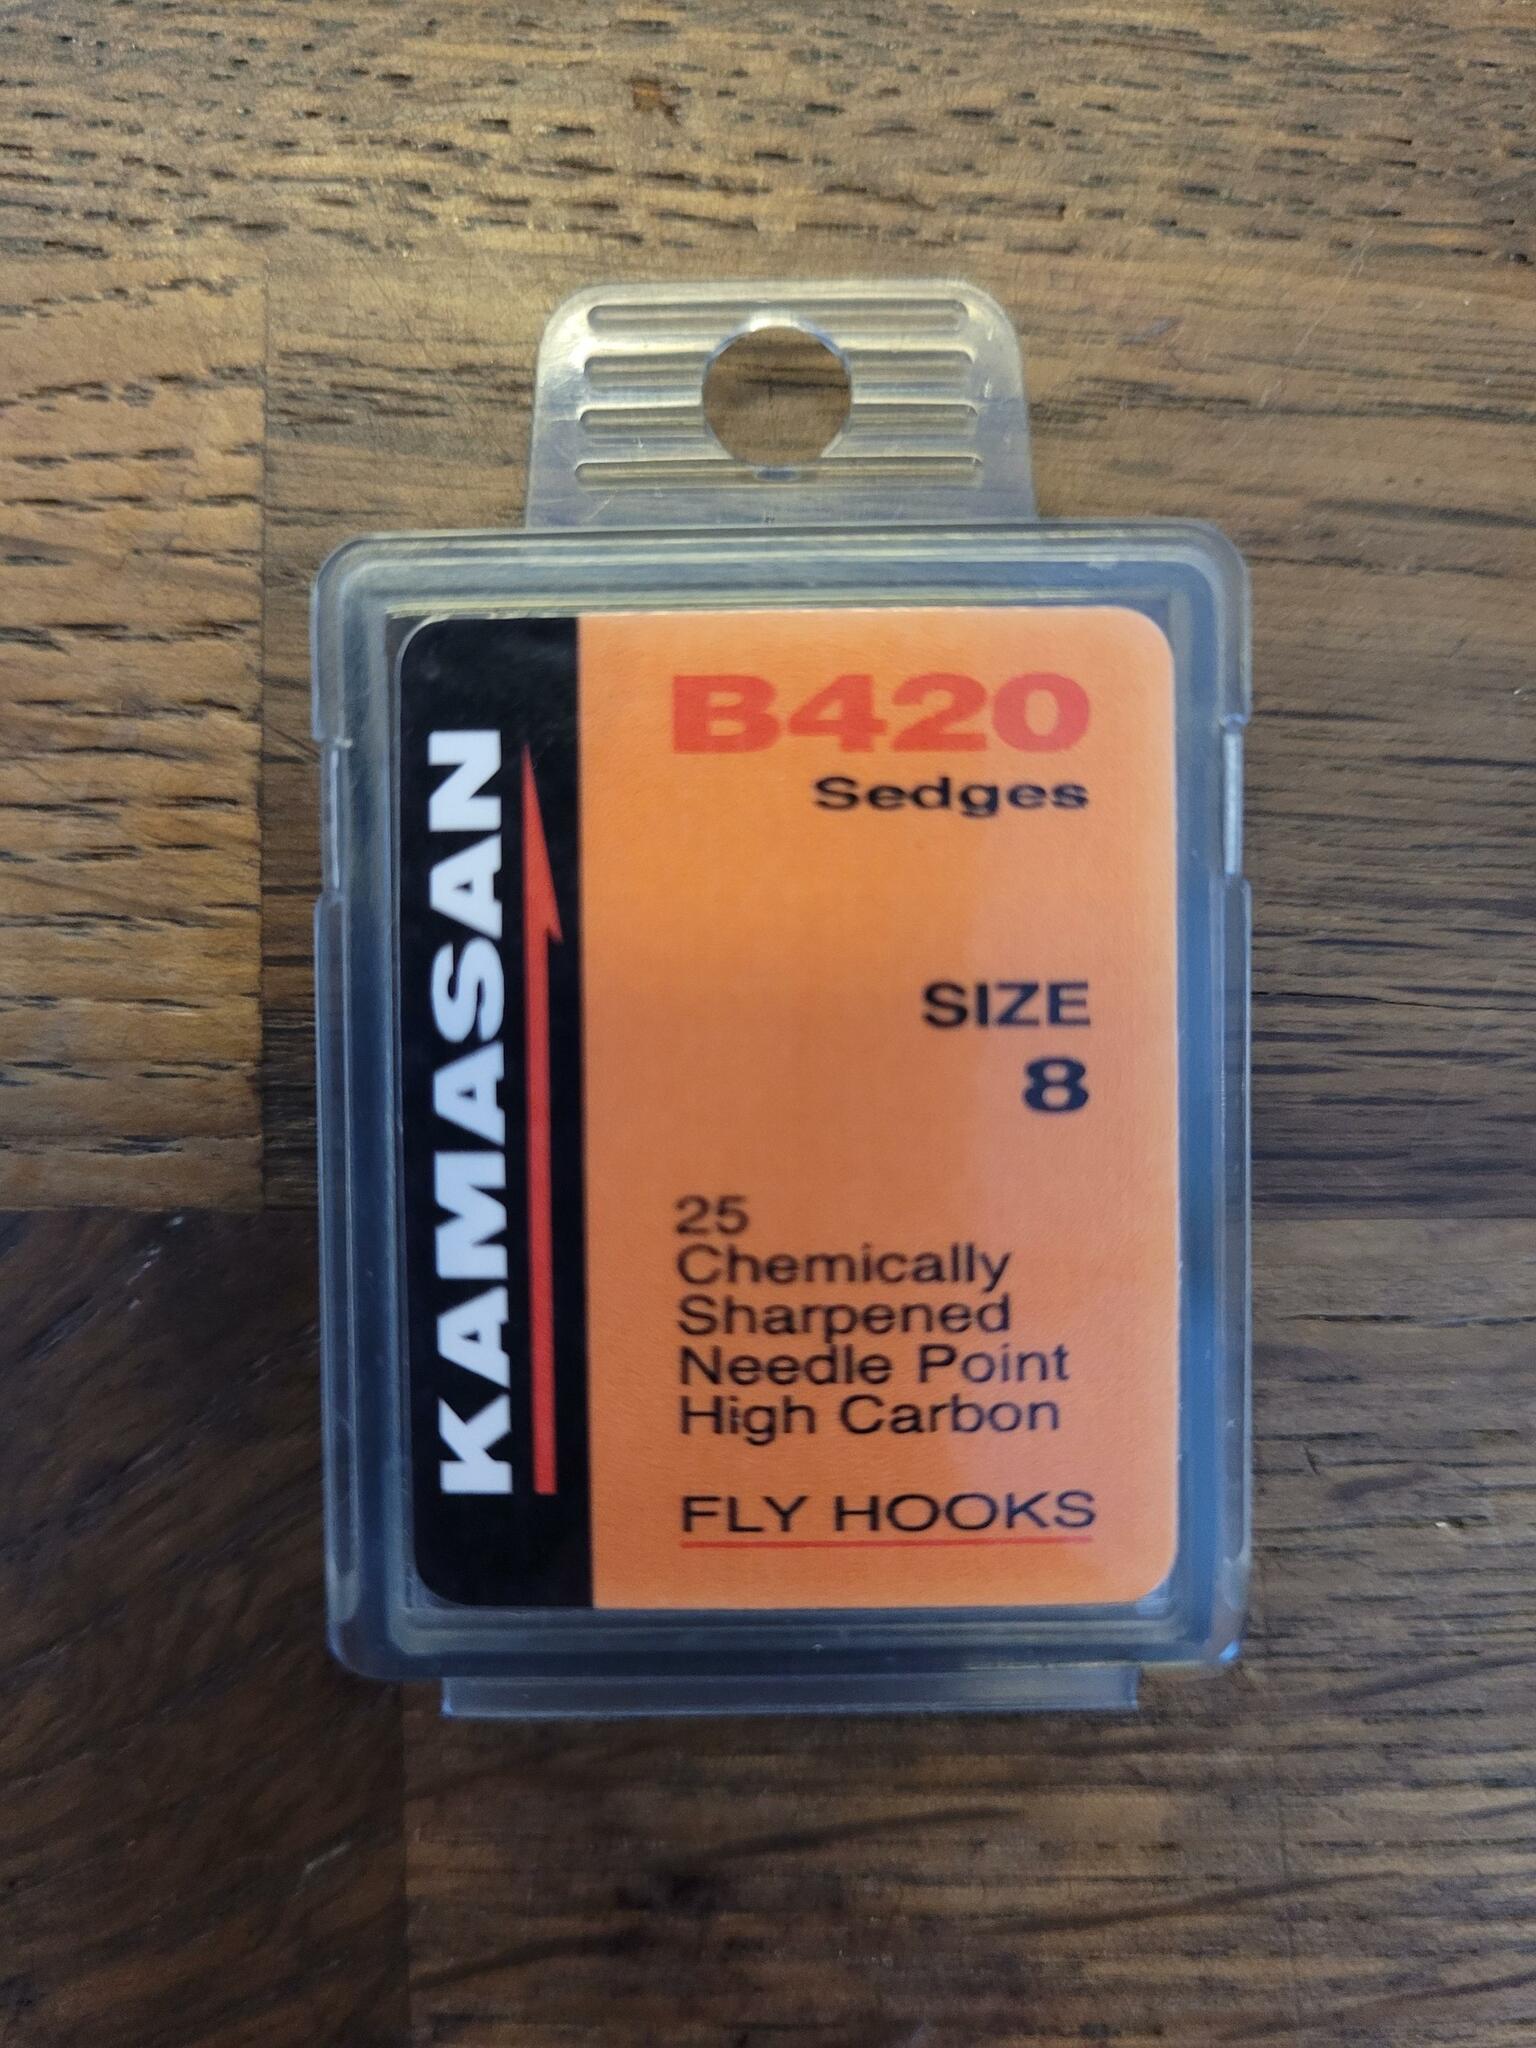 Kamasan B420 Sedges